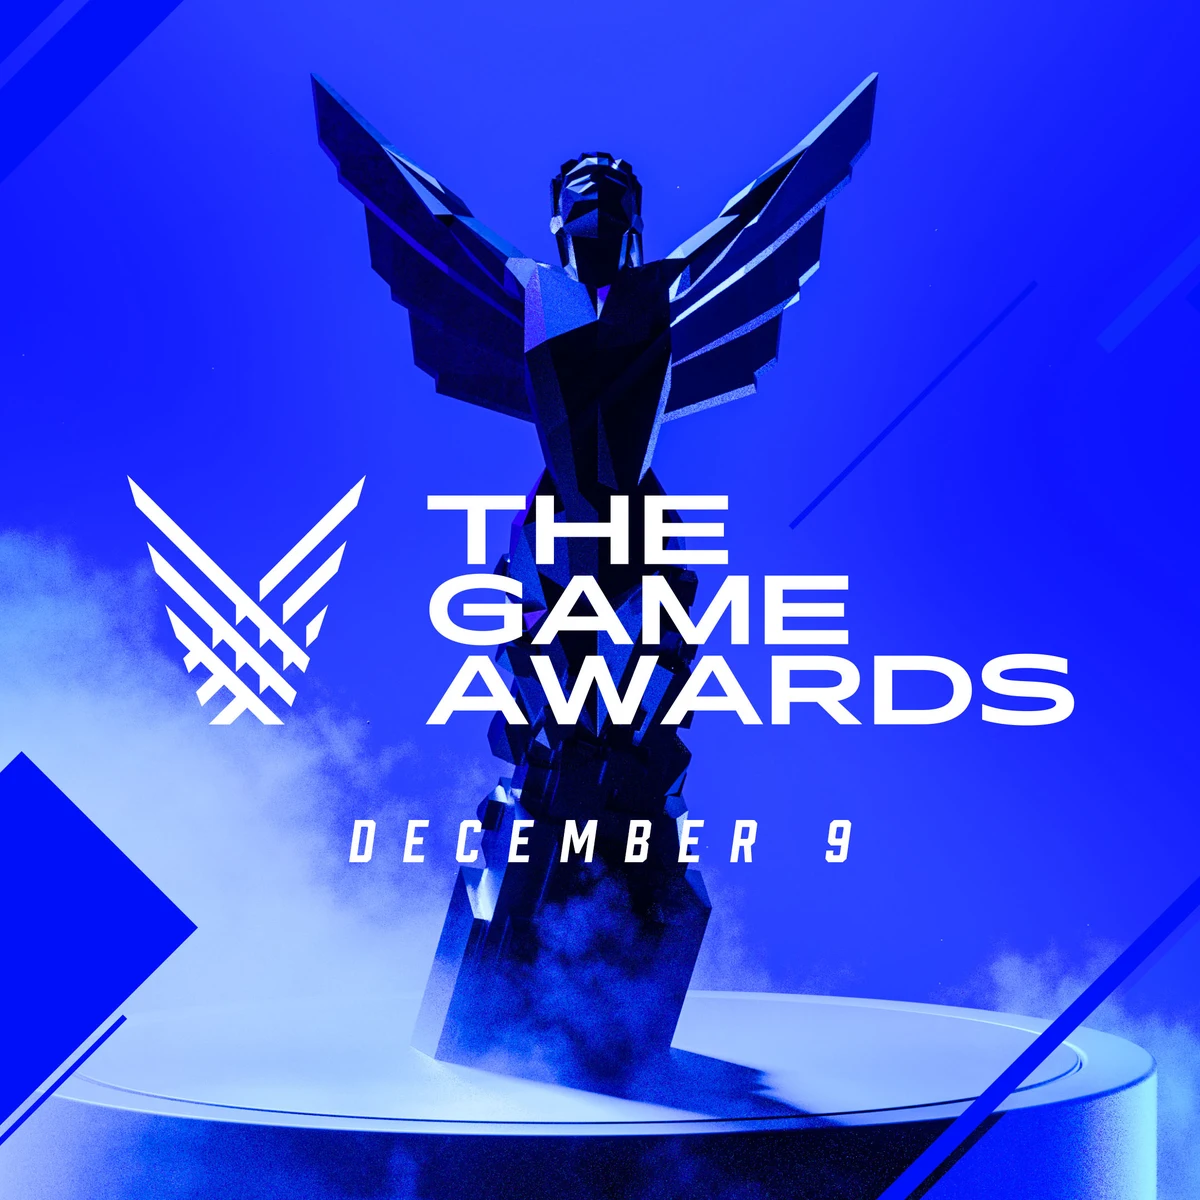 Horario por países y dónde ver la gala de The Game Awards 2022 con